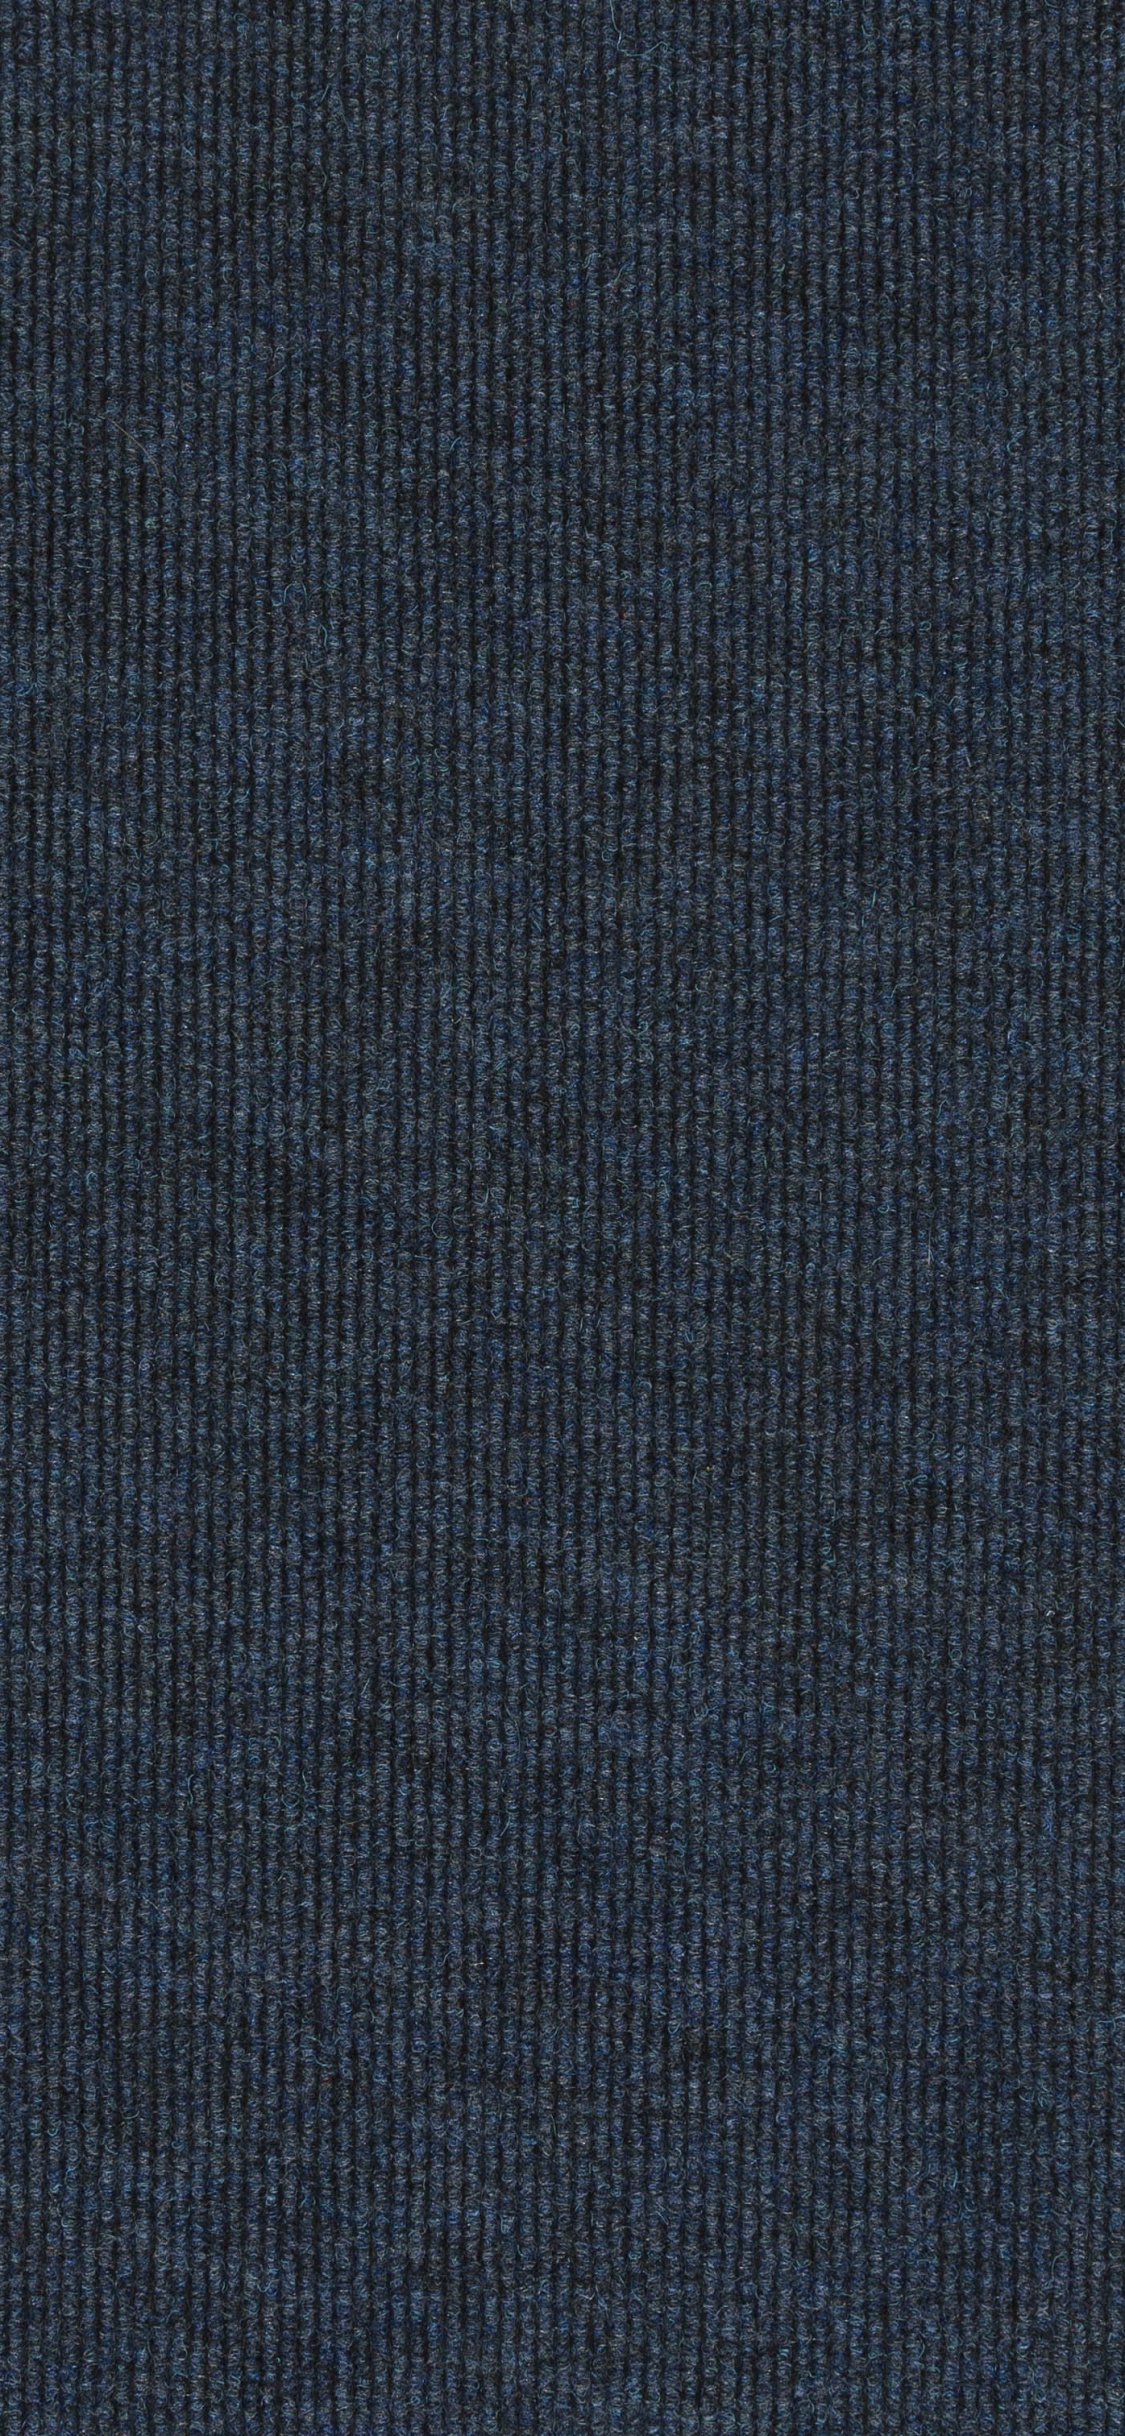 Textile Bleu Sur Fond Noir. Wallpaper in 1125x2436 Resolution